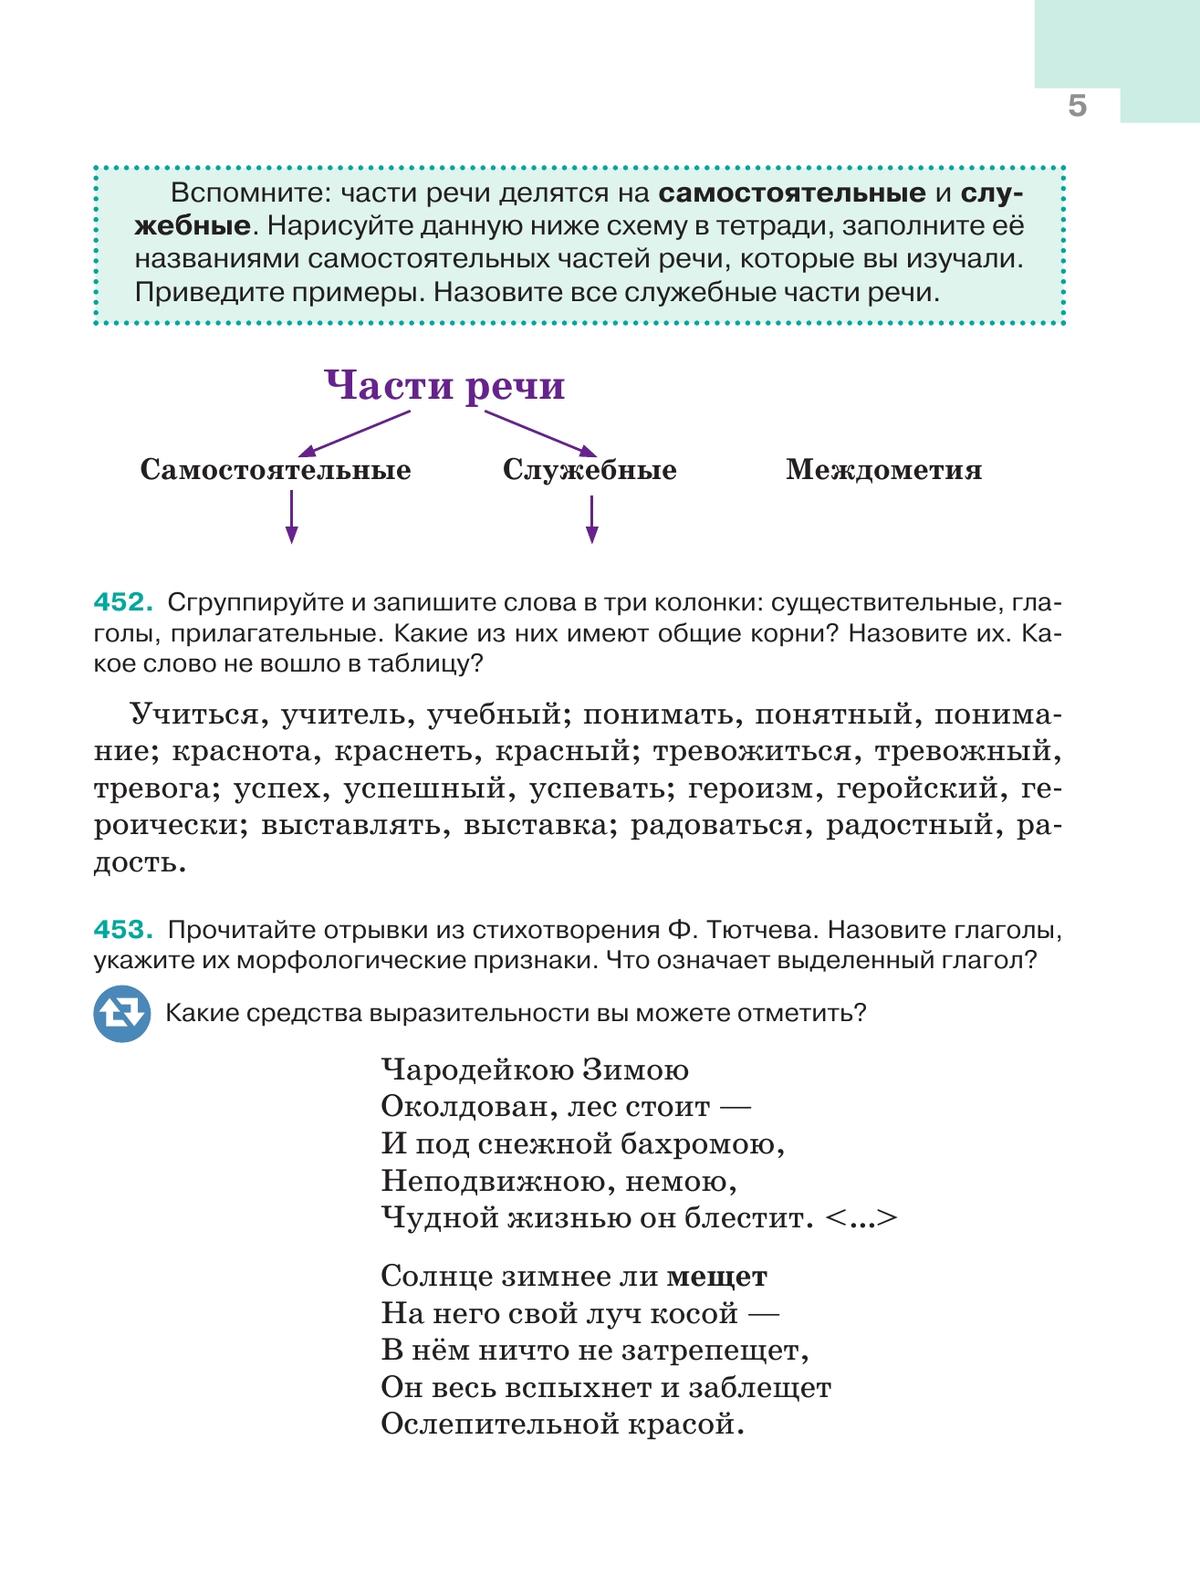 Русский язык. 5 класс. Учебник. В 2-х ч. Ч. 2 11